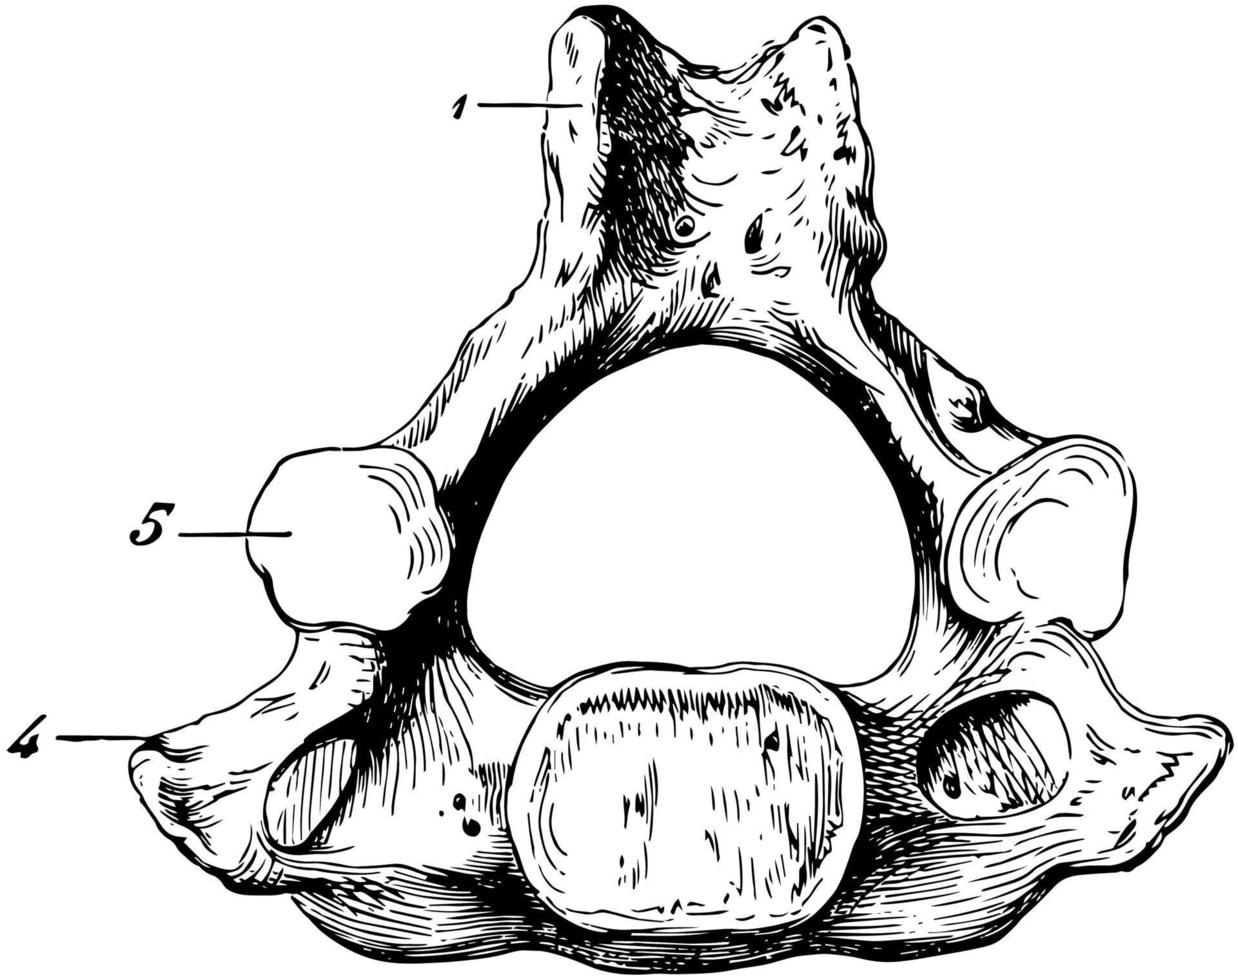 osso de vértebra cervical humana, ilustração vintage. vetor